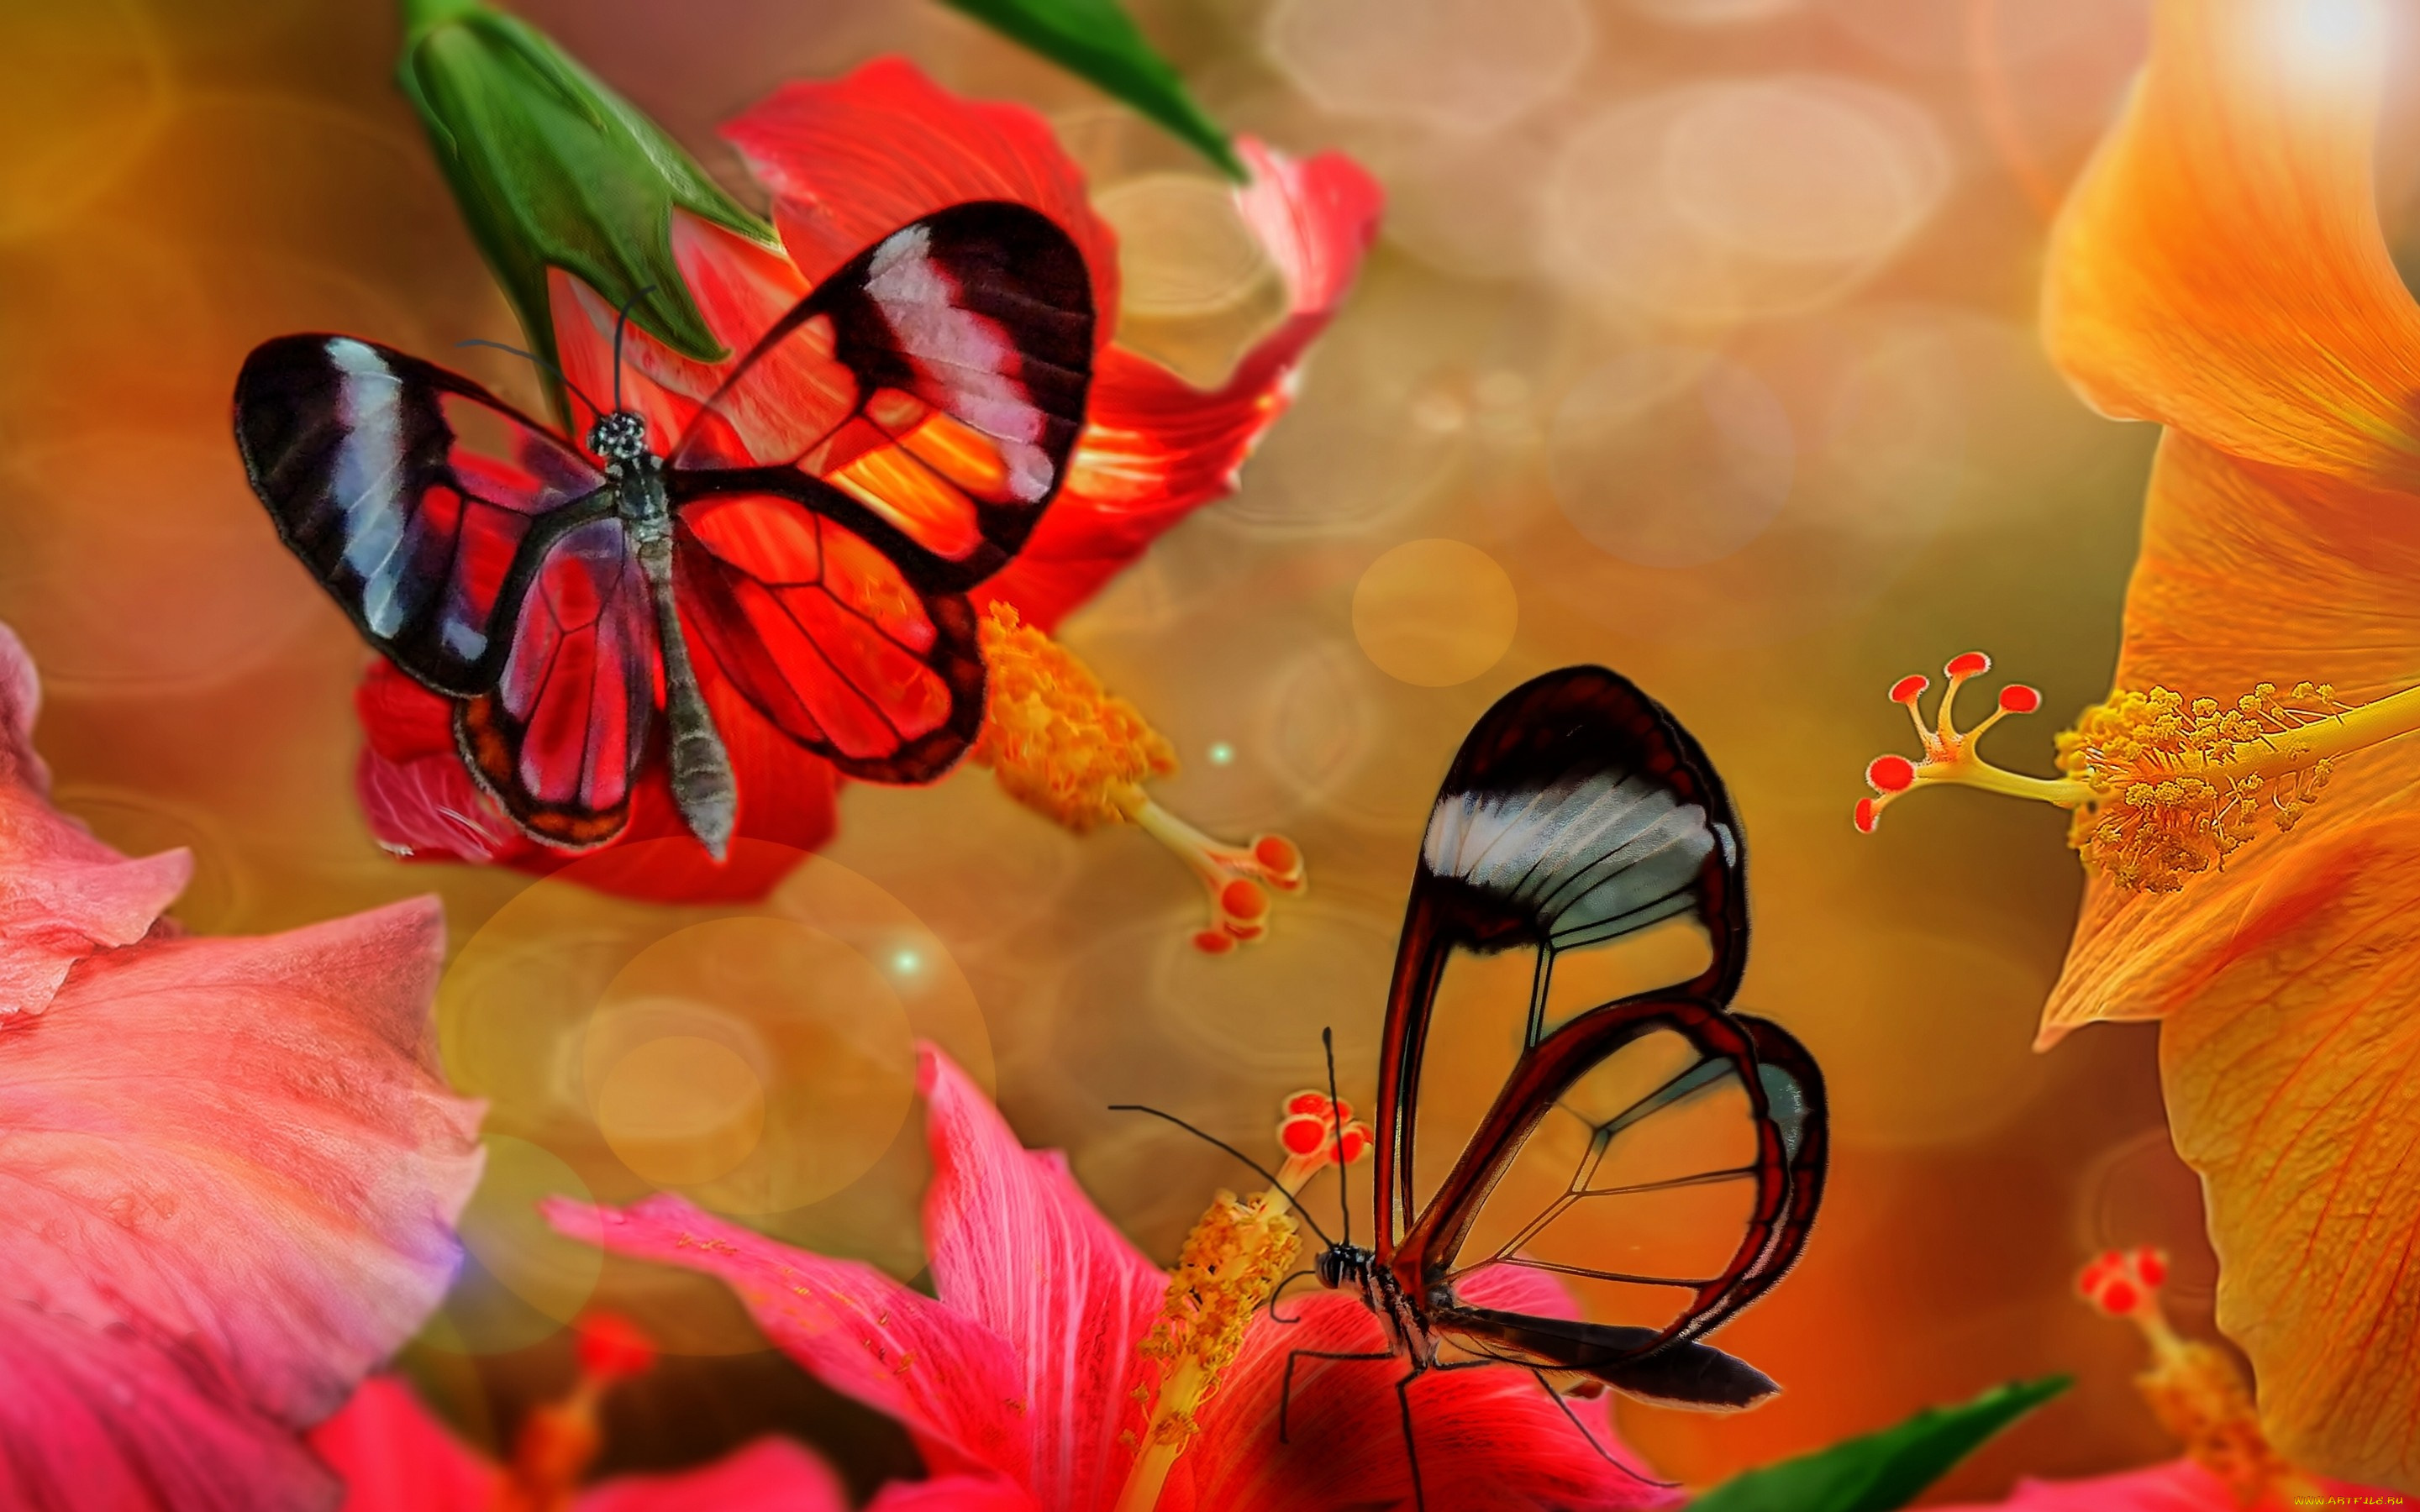 Обои на стол бабочки. Бабочка на цветке. Бабочки в цветах. Яркие бабочки. Картинки на рабочий стол бабочки.